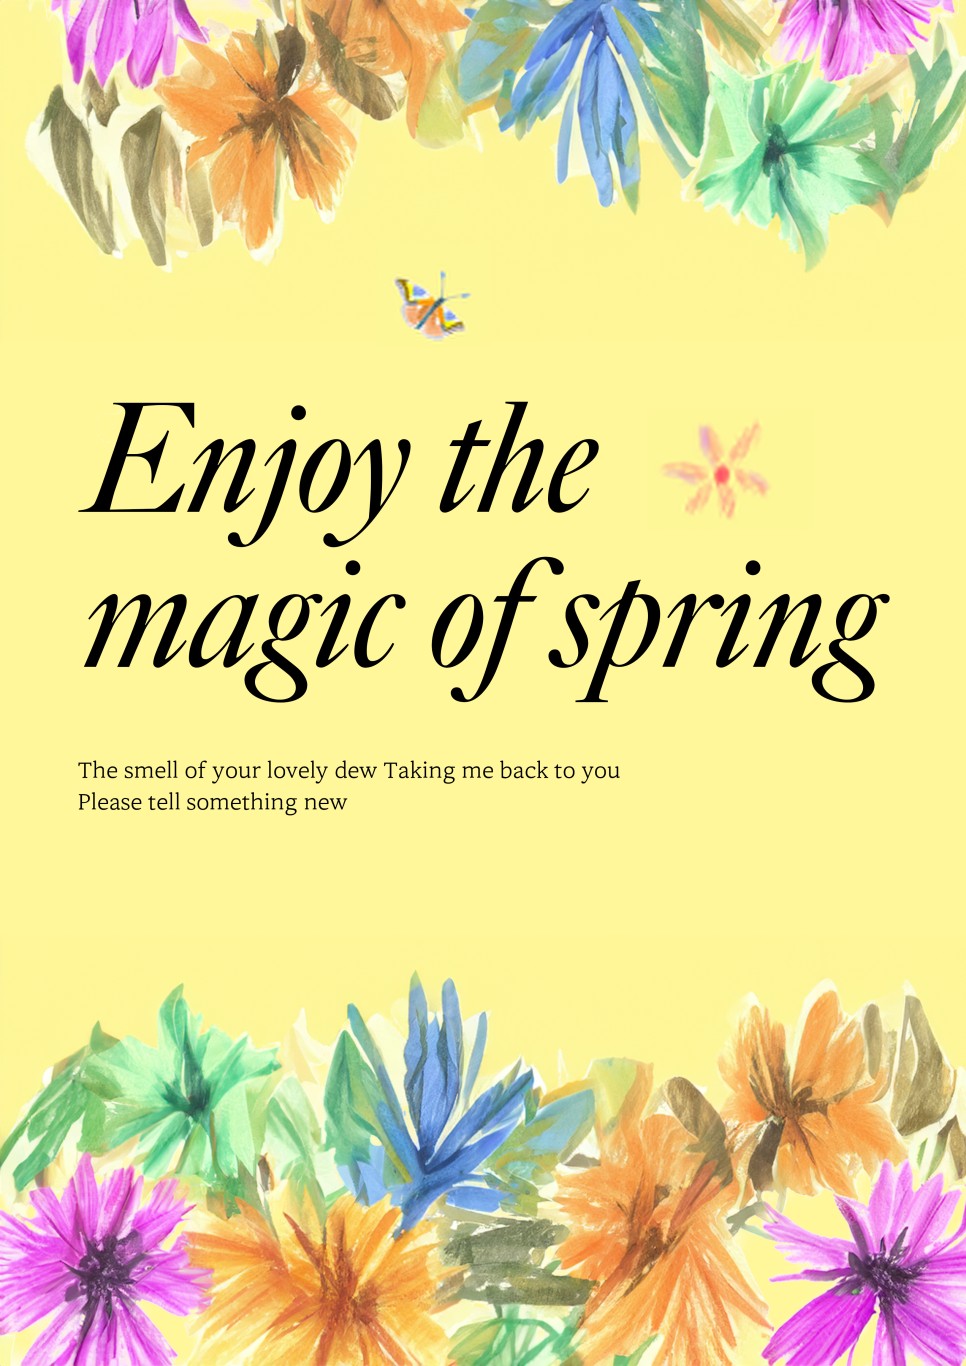 포토샵 AI 명령어로 홍보 포스터 만들기 (꽃, 봄 이미지 활용)